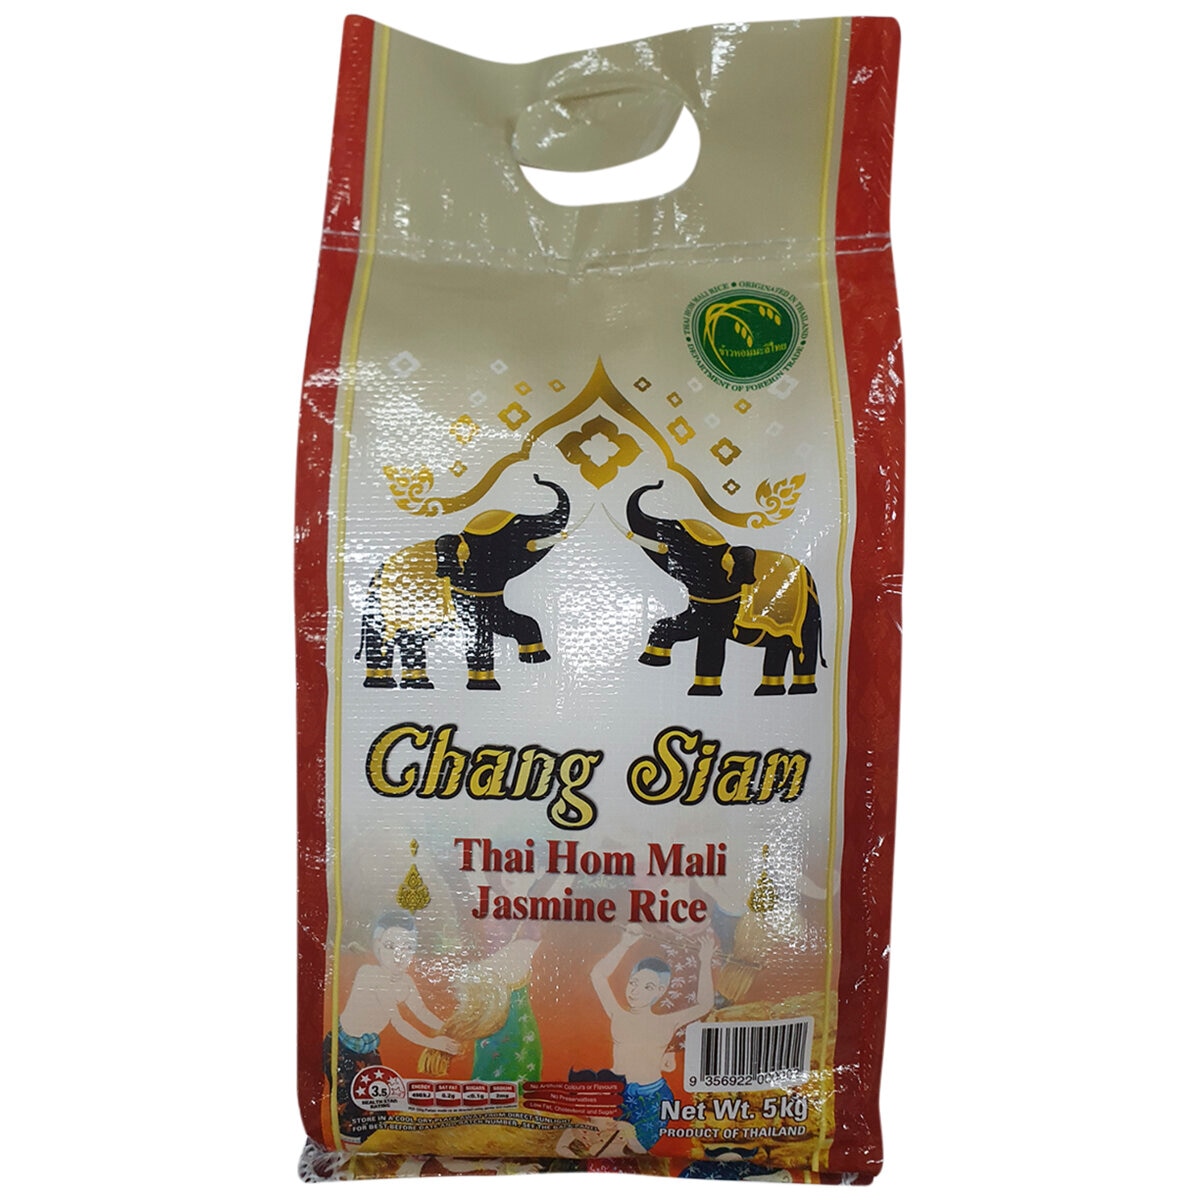 Chang Siam Thai Hom Mali Jasmine Rice 5kg